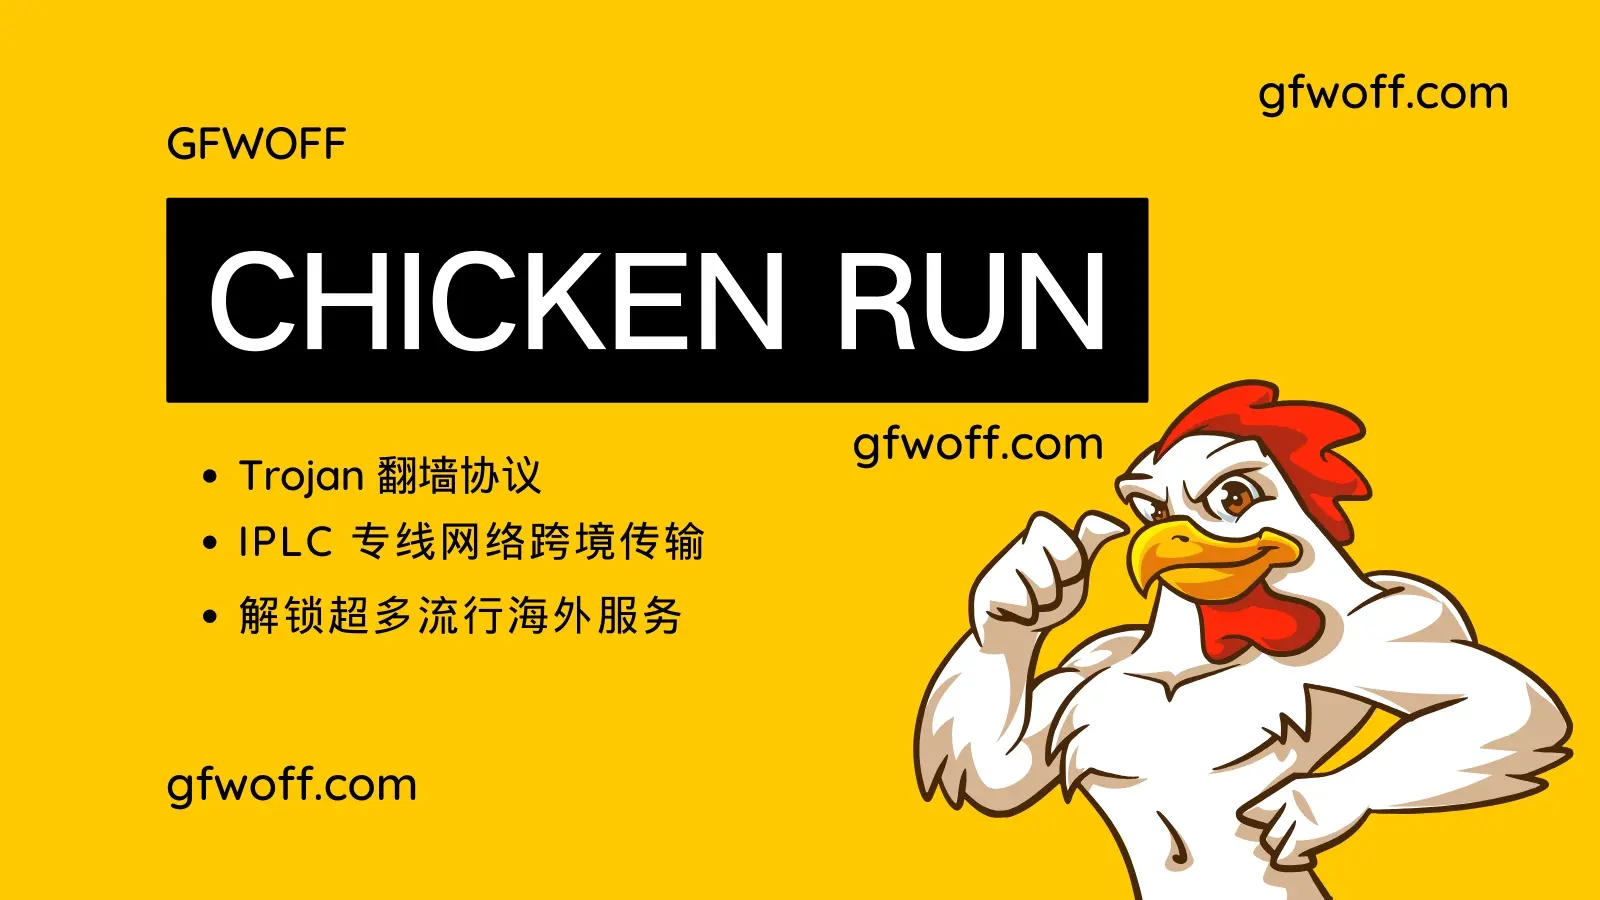 小鸡快跑机场 Chicken run